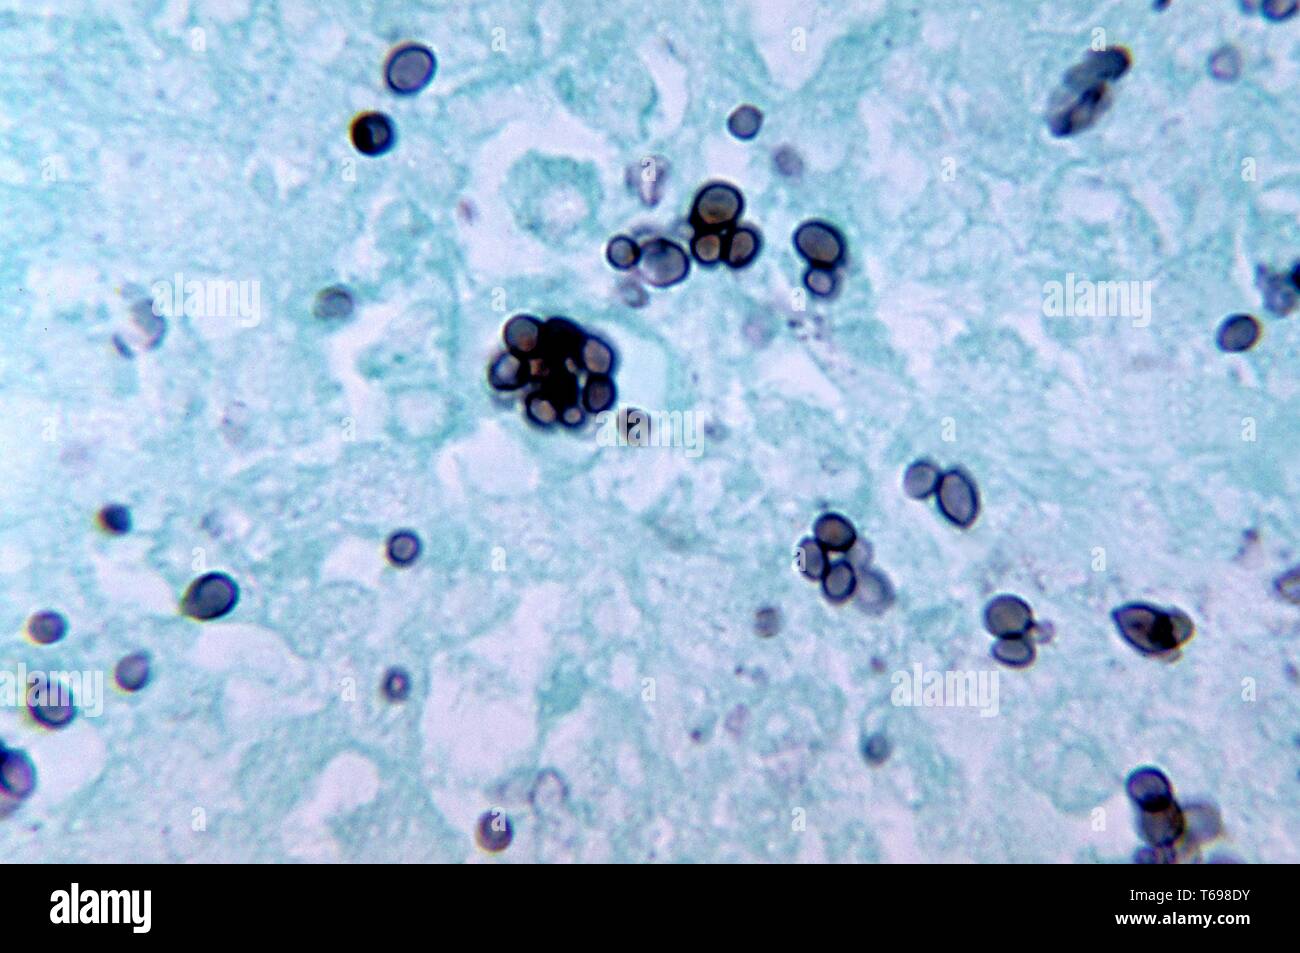 Methenamin silber Fleck photomicrograph des histopathologic Veränderungen in der Histoplasmose durch die dimorphic Pilz Histoplasma capsulatum, 1972 verursacht. Bild mit freundlicher Genehmigung Zentren für Krankheitskontrolle und Prävention (CDC)/Dr Libero Ajello. () Stockfoto